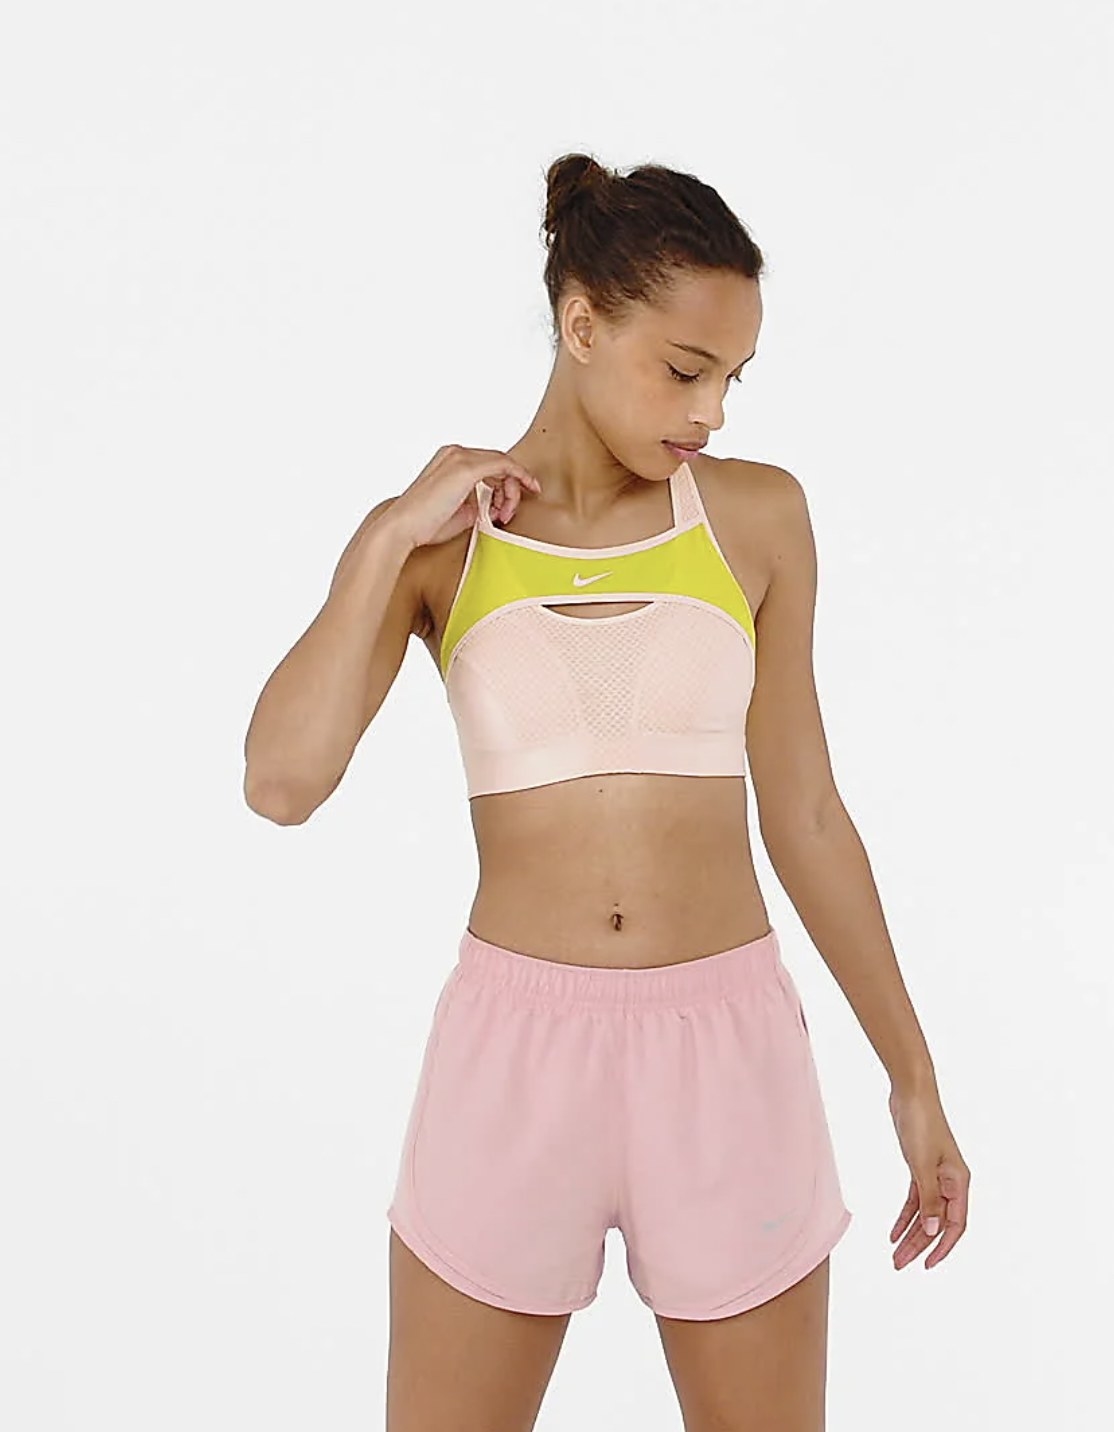 Model wearing the pink sports bra